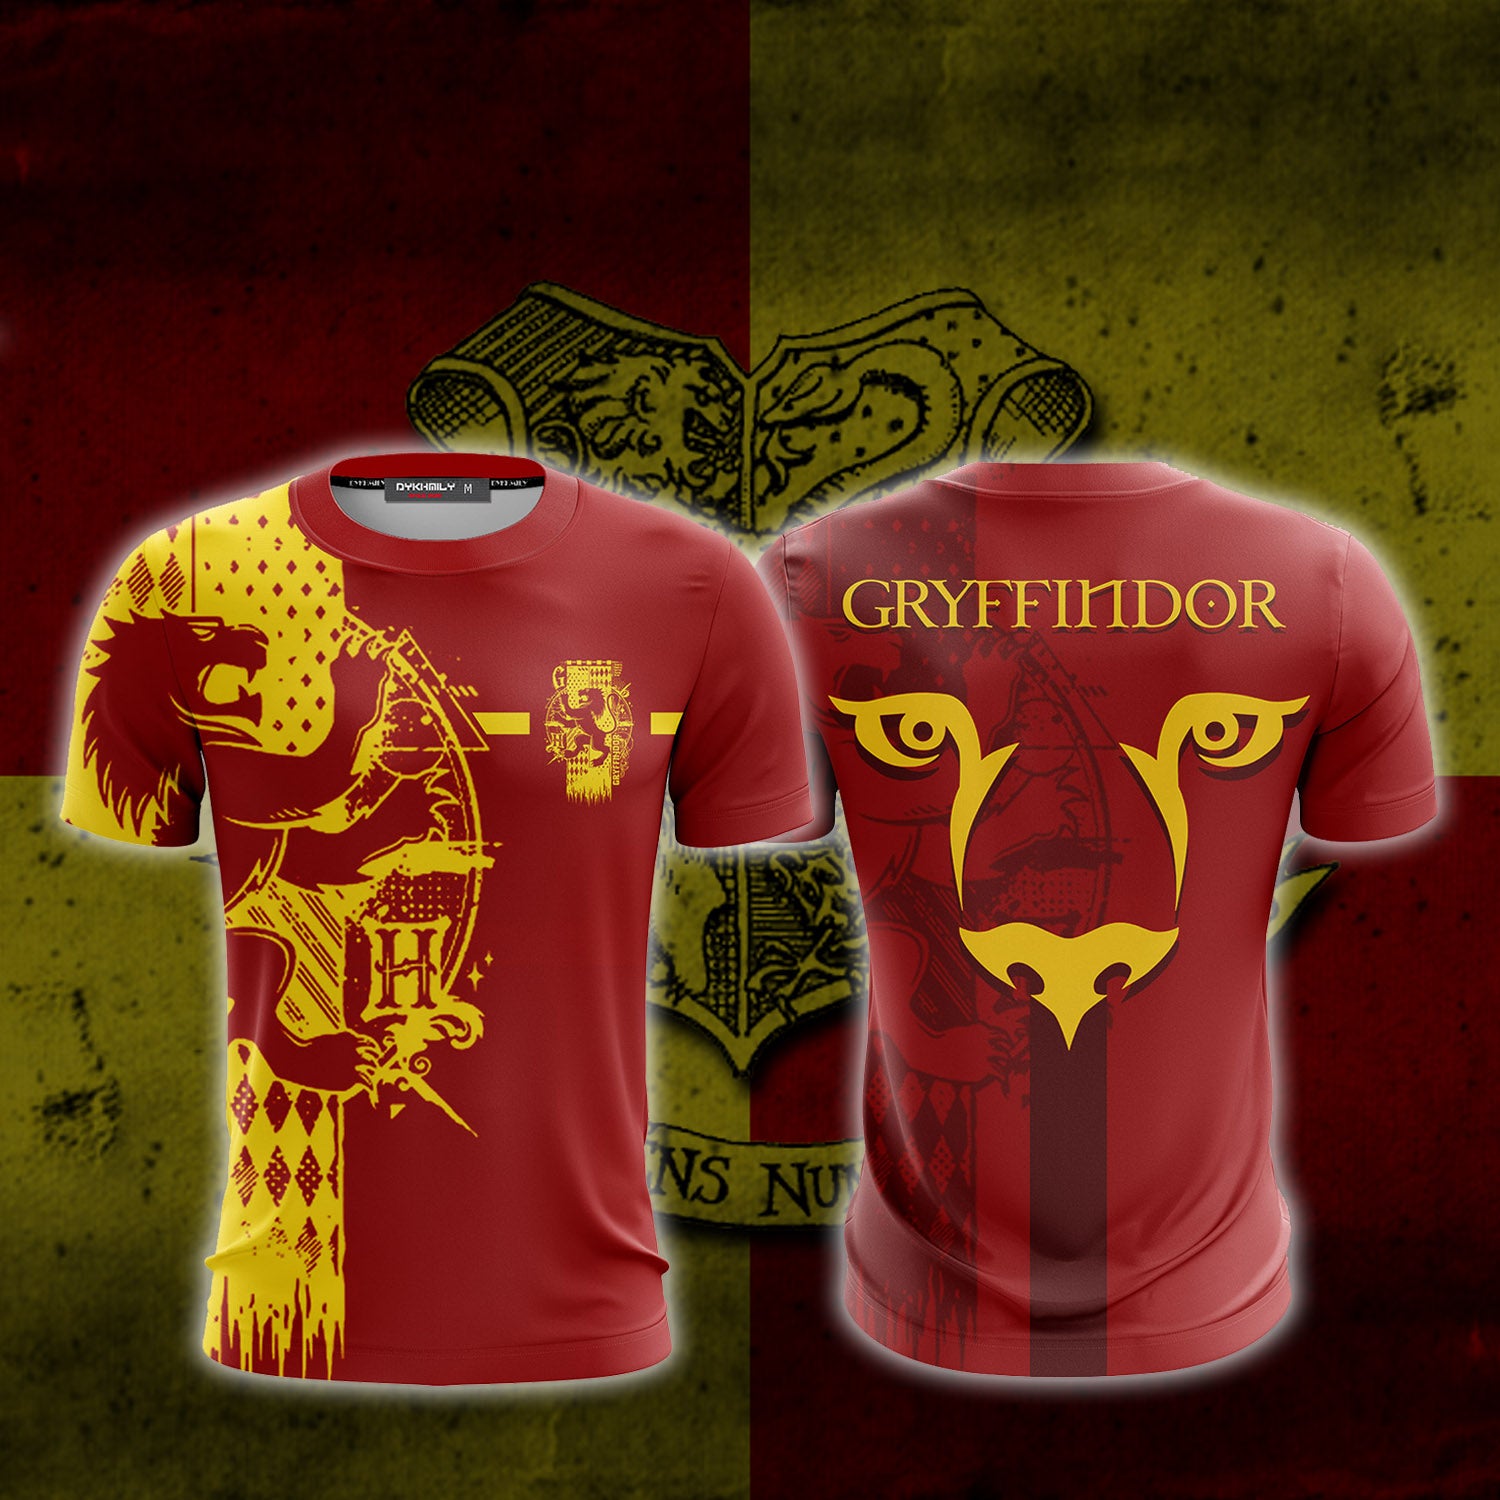 Gryffindor T-shirt